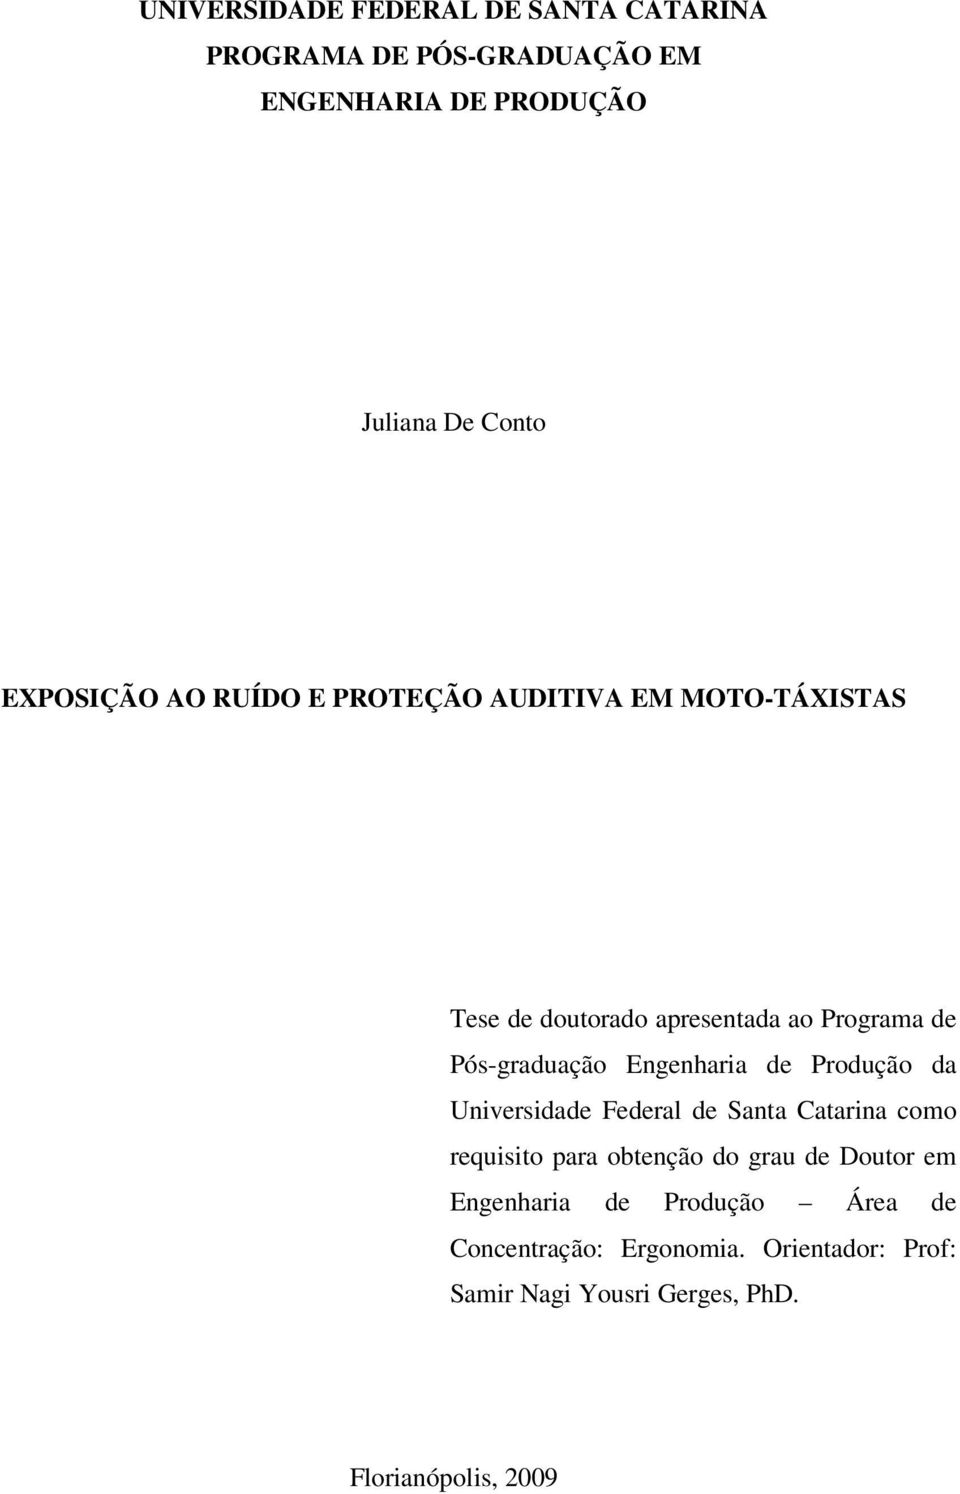 Engenharia de Produção da Universidade Federal de Santa Catarina como requisito para obtenção do grau de Doutor em